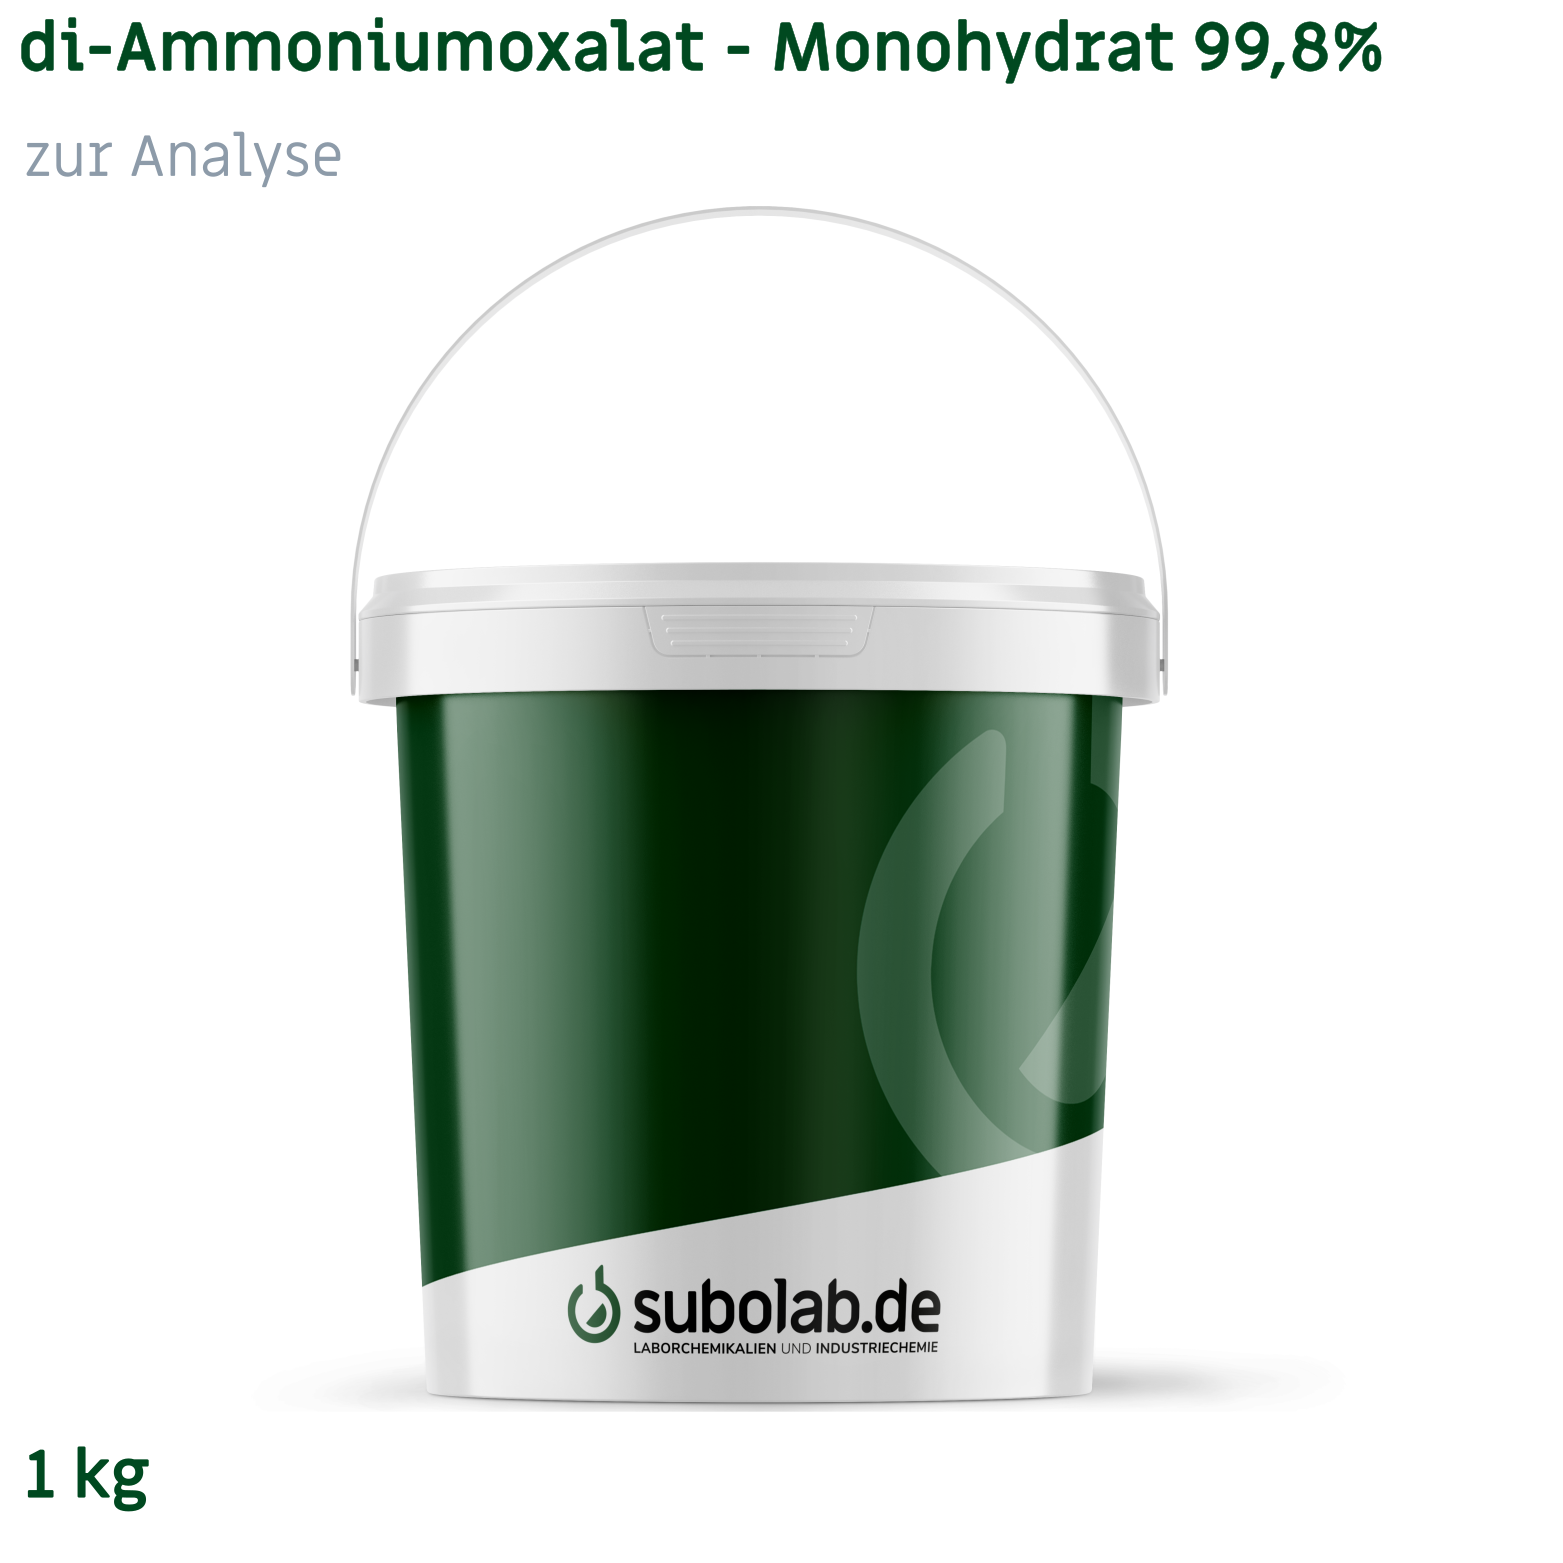 Bild von di-Ammoniumoxalat - Monohydrat 99,8% zur Analyse (1 kg)